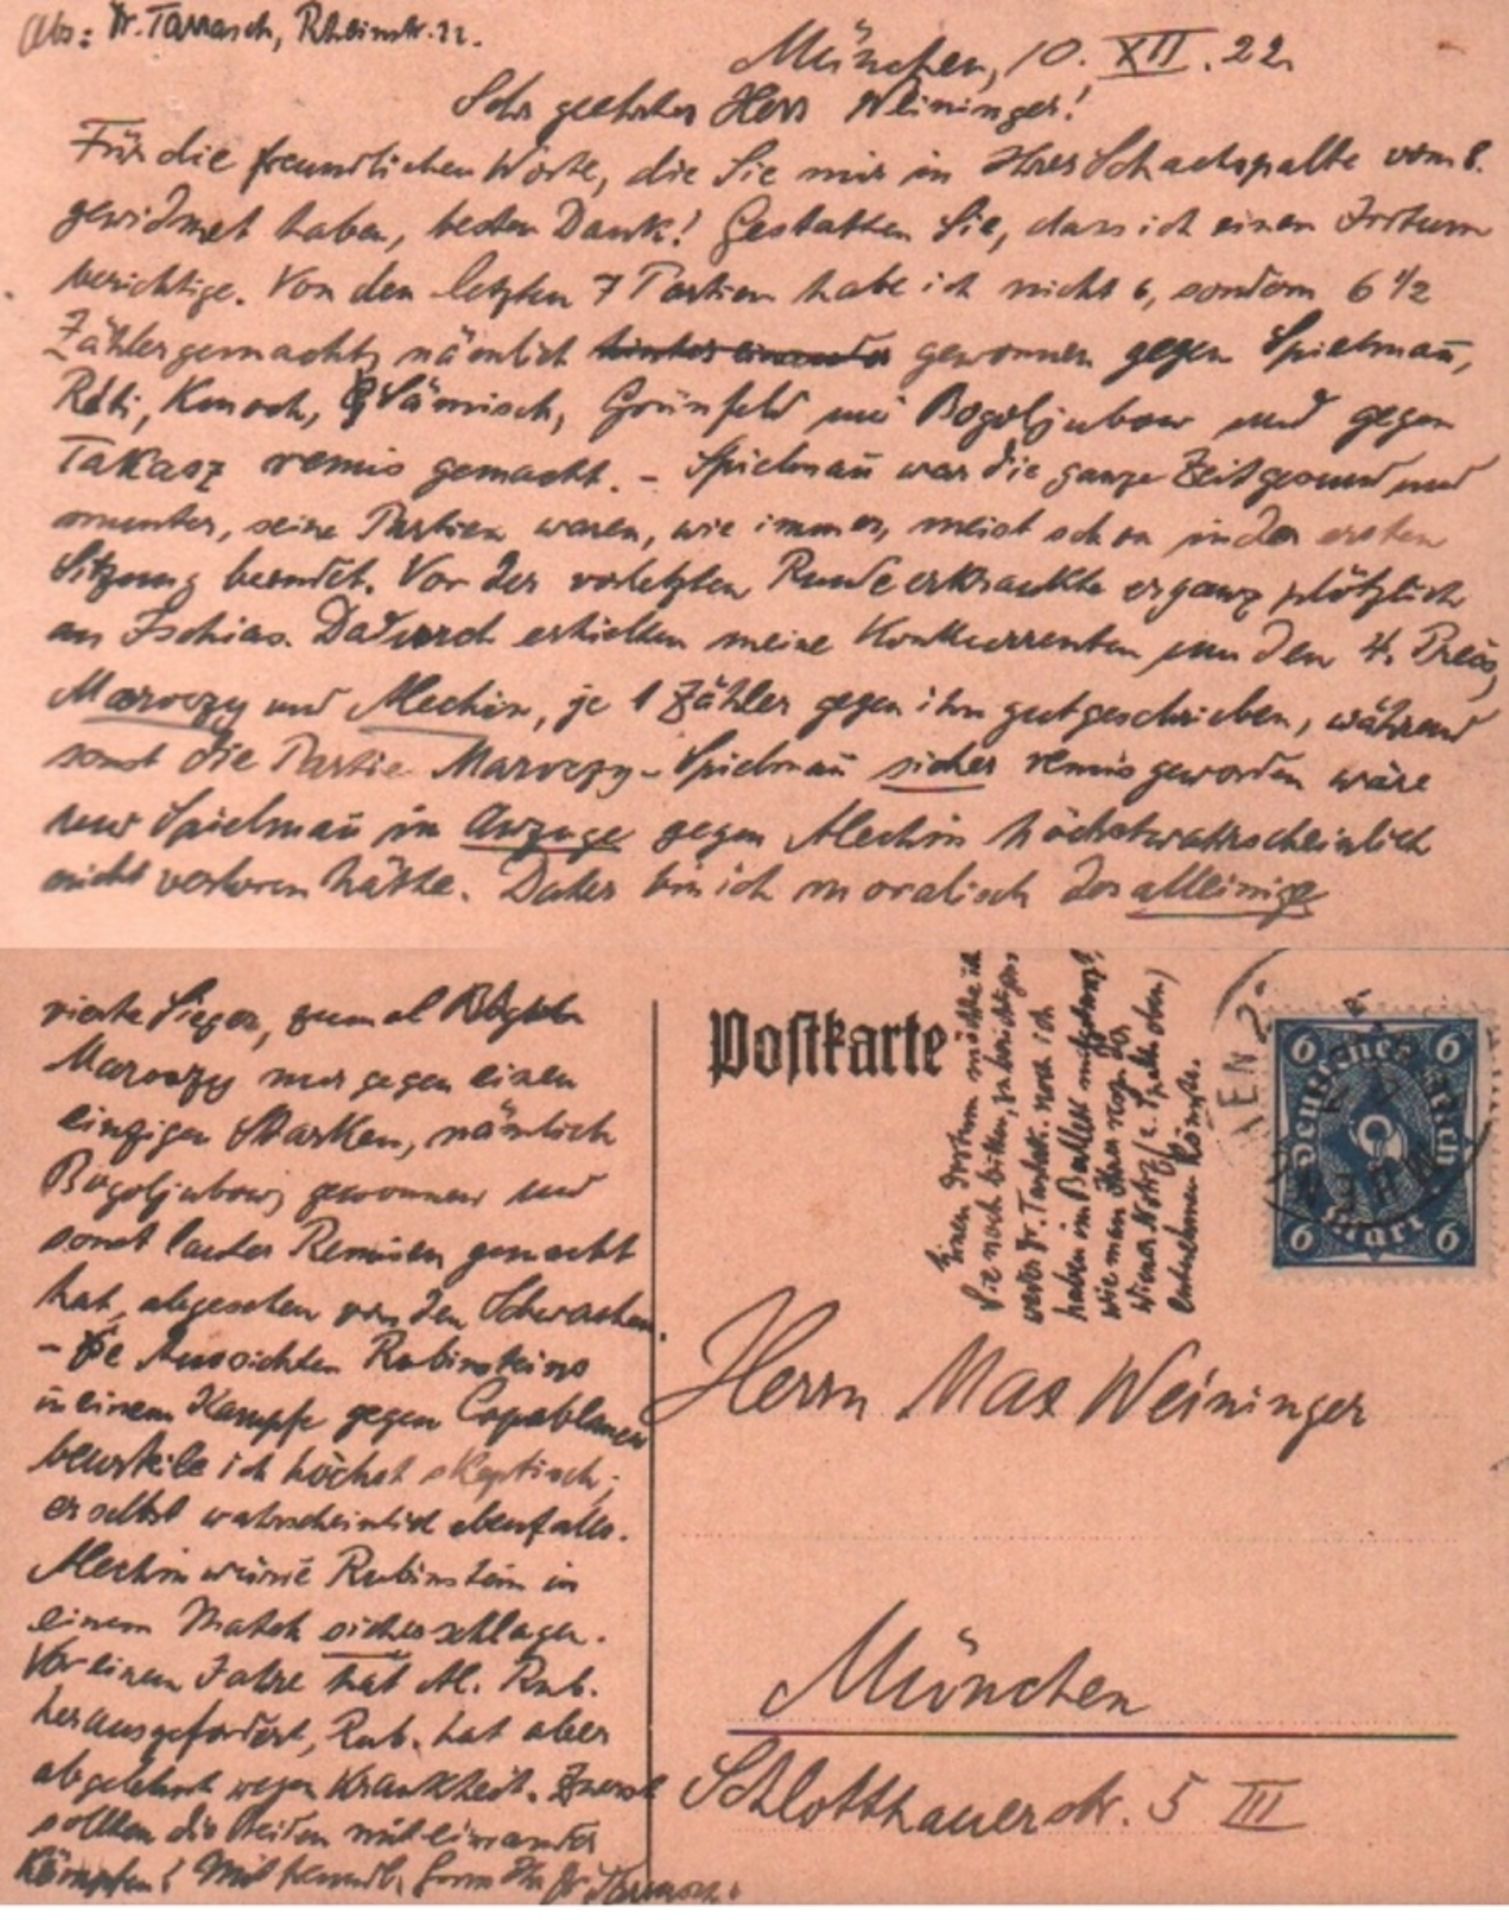 Tarrasch, Siegbert. Postalisch gelaufene Postkarte mit eigenhändig geschriebenem Text in deutscher